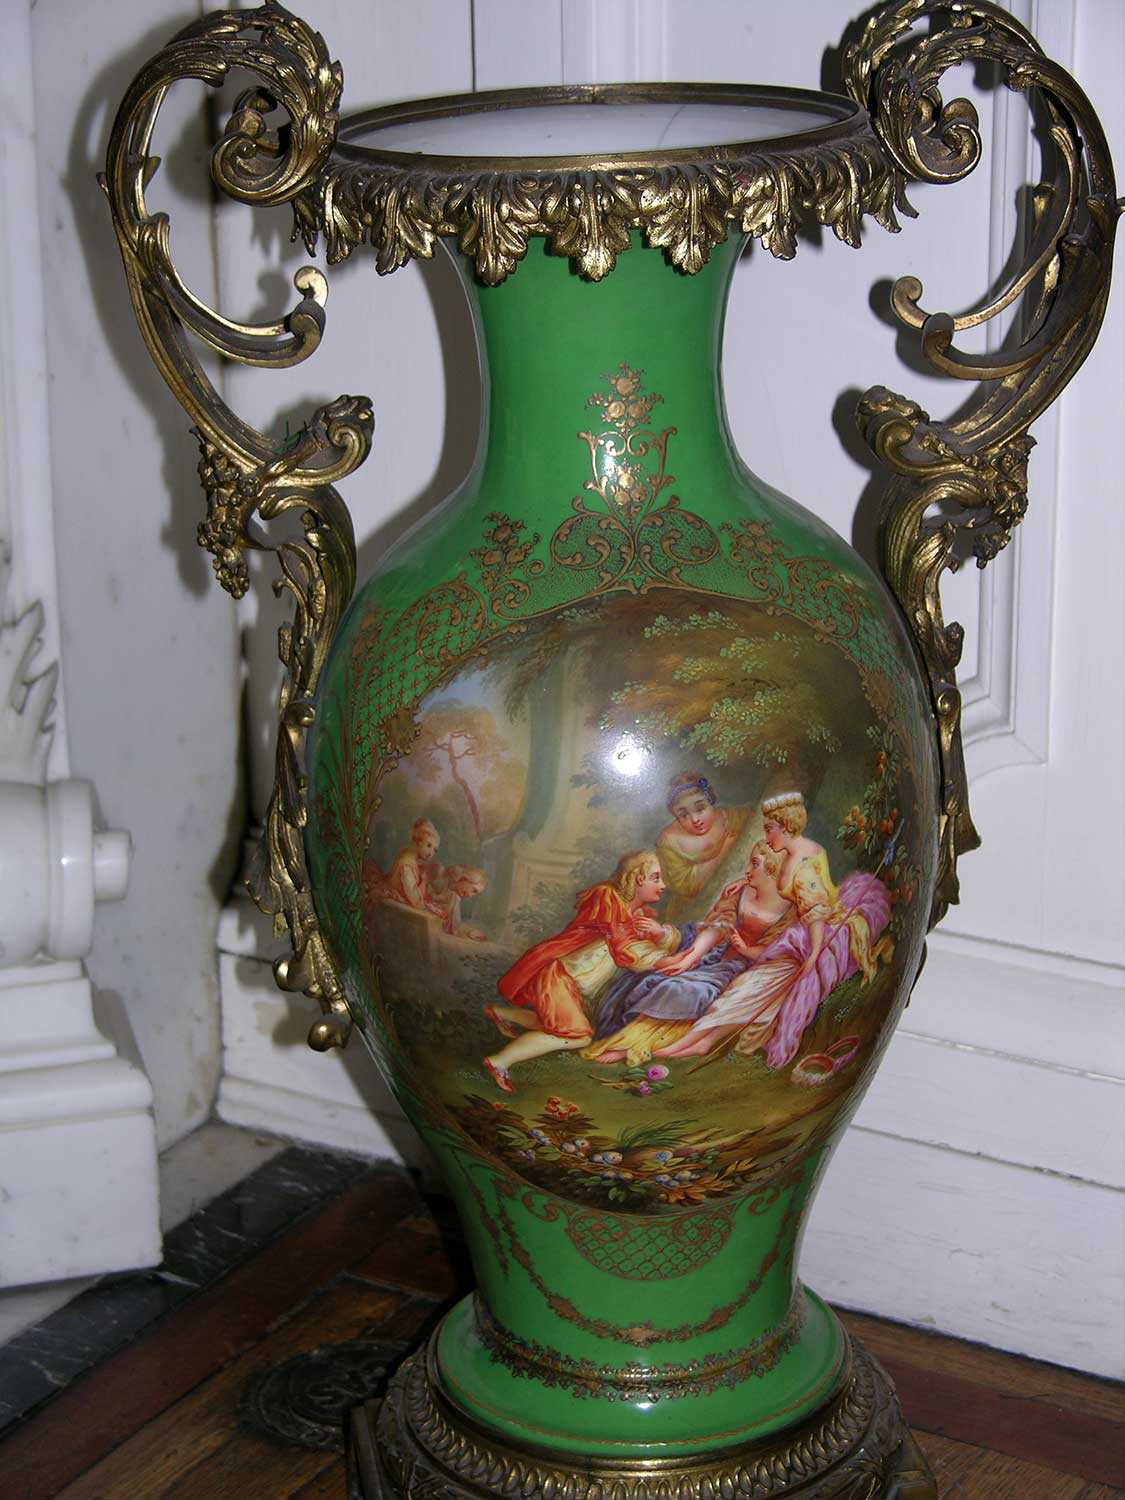 Ce vase – et de nombreux autres jolis objets en céramique – est exposé à la Place Fulford